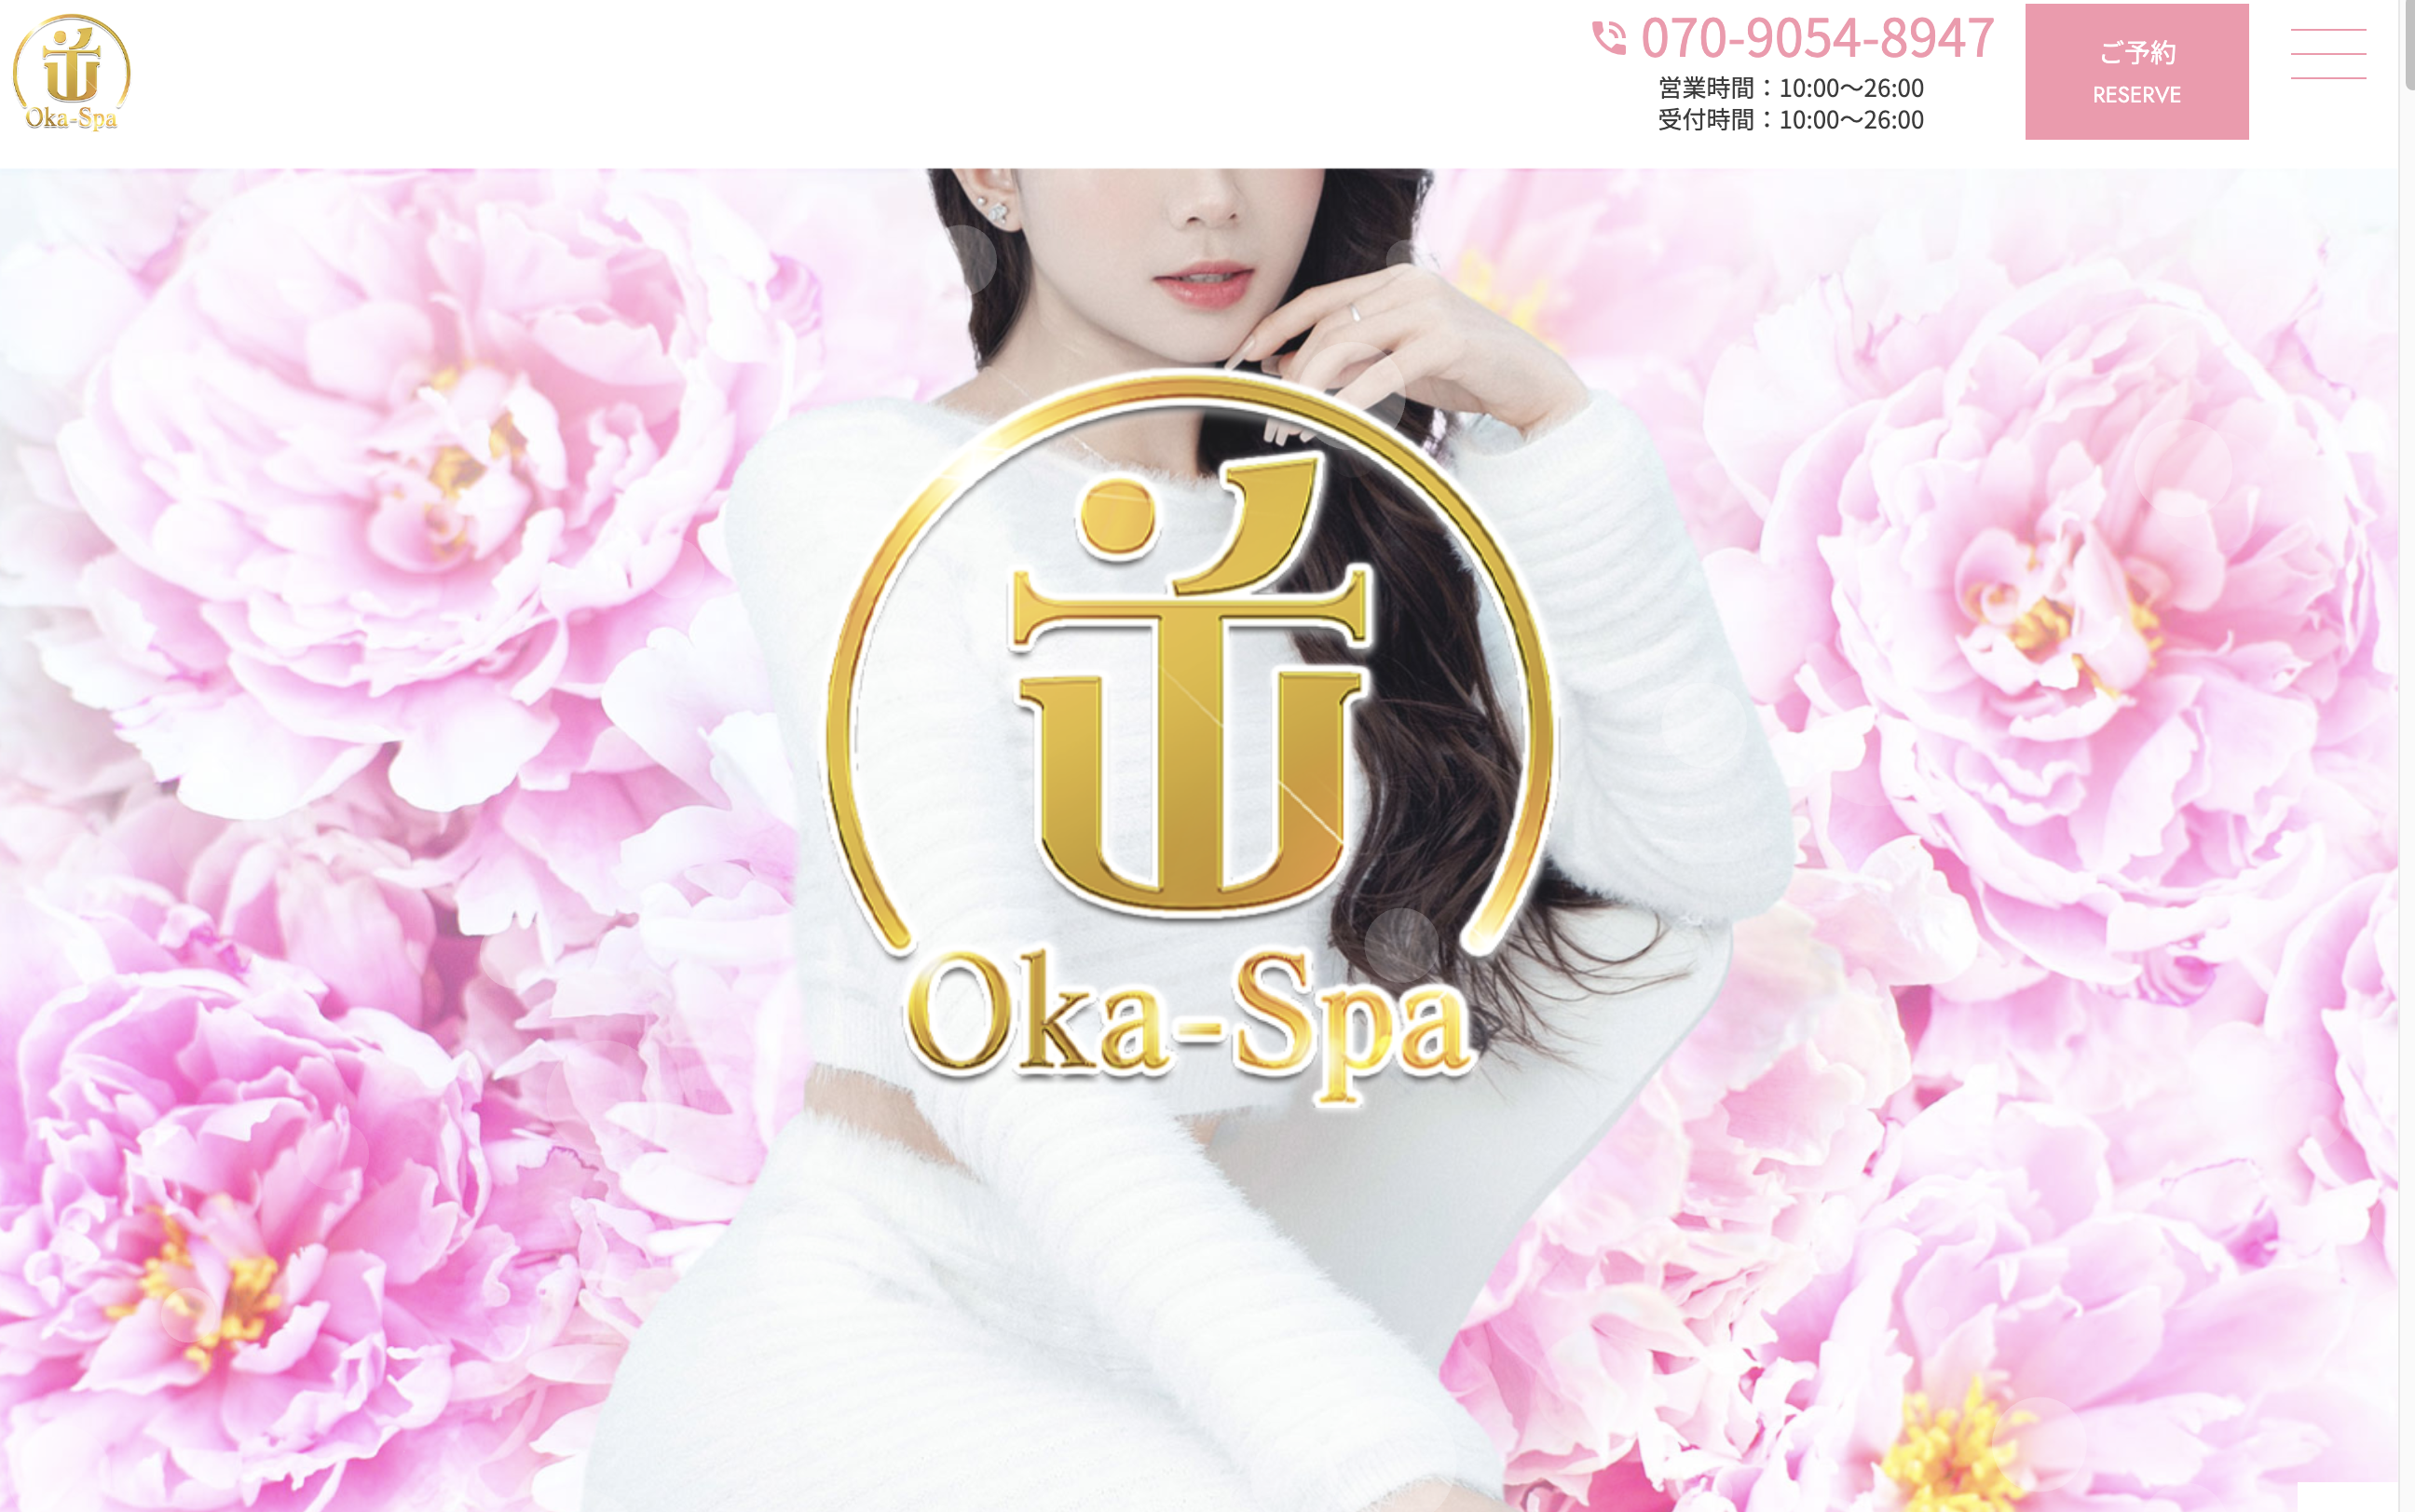 Oka-Spa オフィシャルサイト